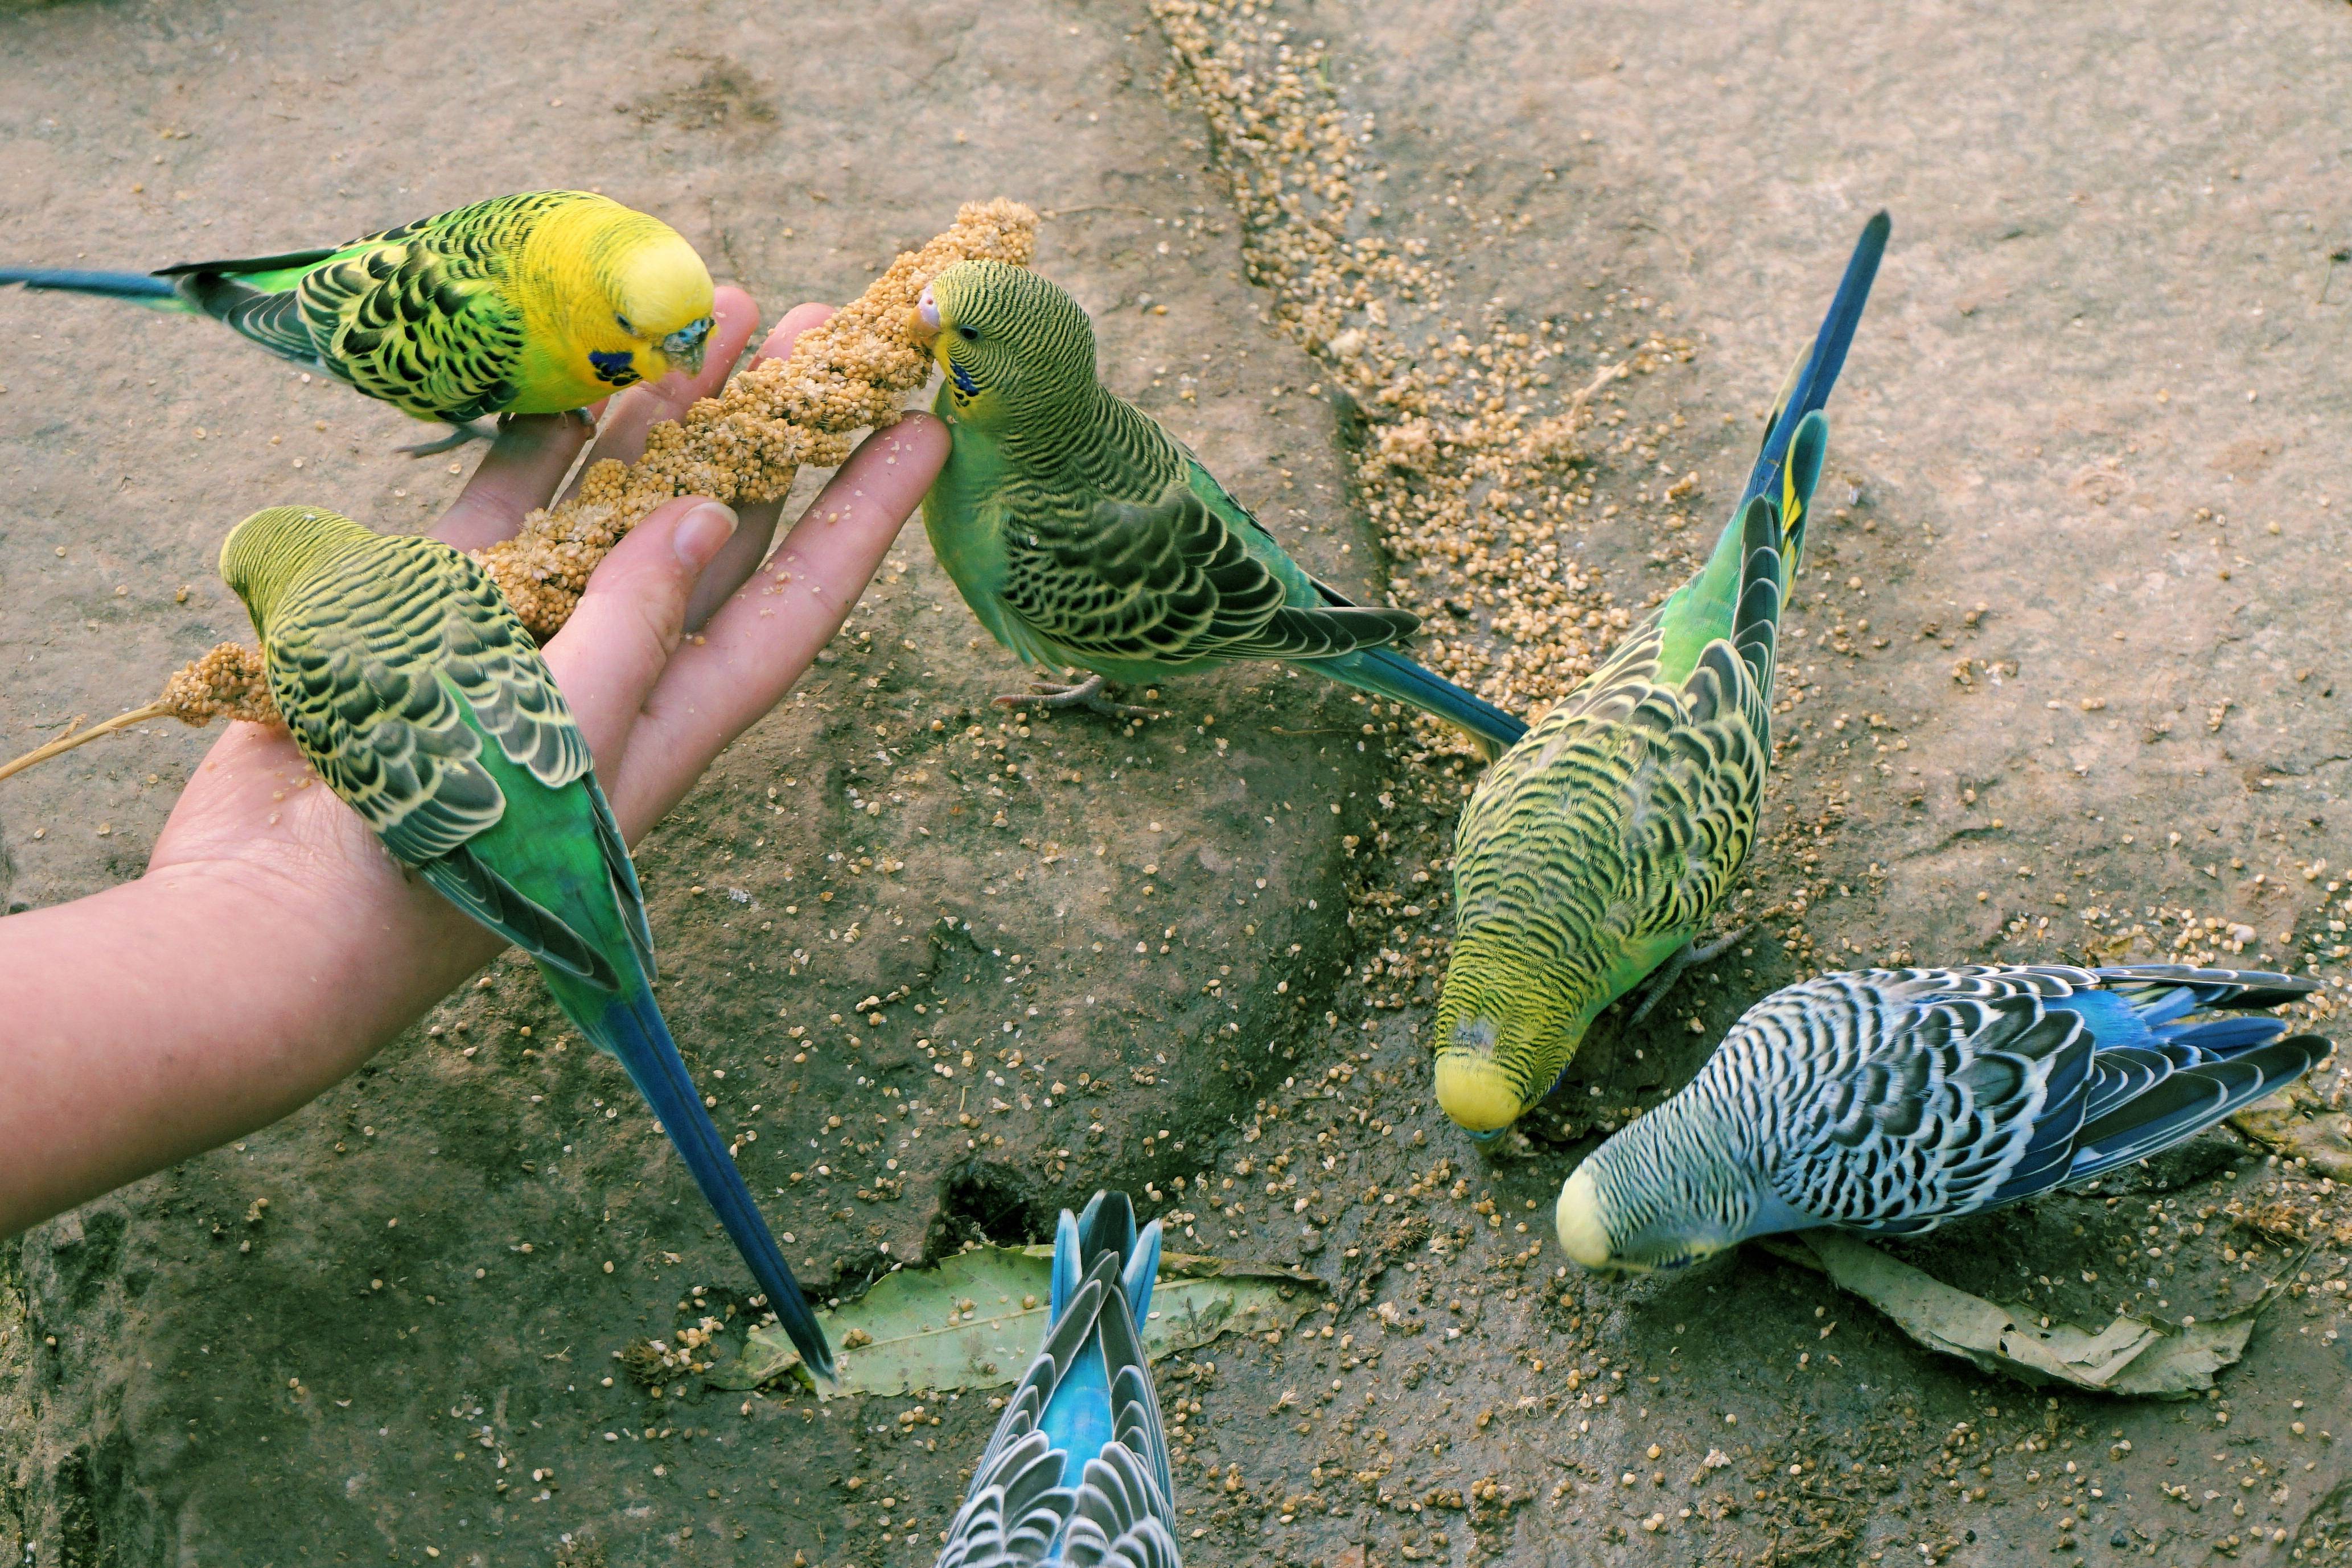 Сколько лет живут попугаи: волнистые, корелла, ара, какаду, жако